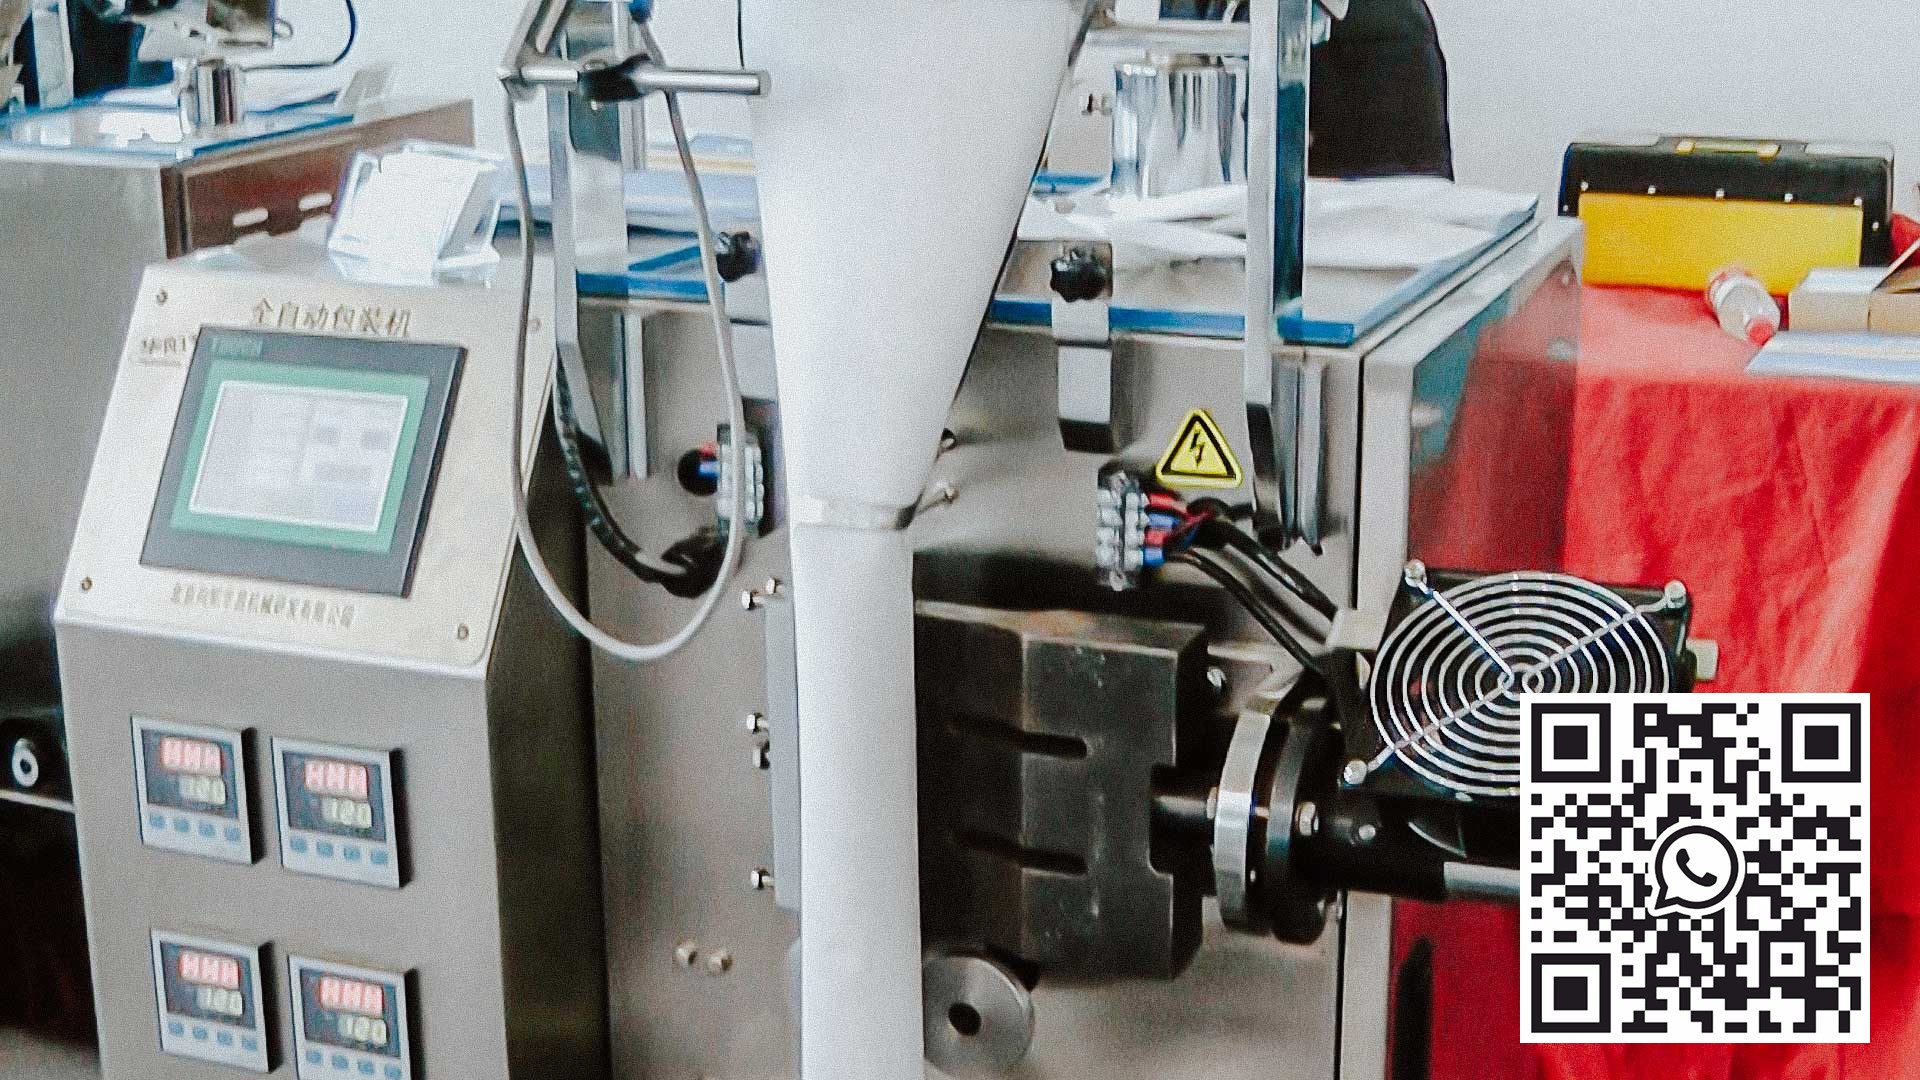 آلة تعبئة أوتوماتيكية لتعبئة المساحيق والحبيبات في مواد ترشيح أكياس الوسائد